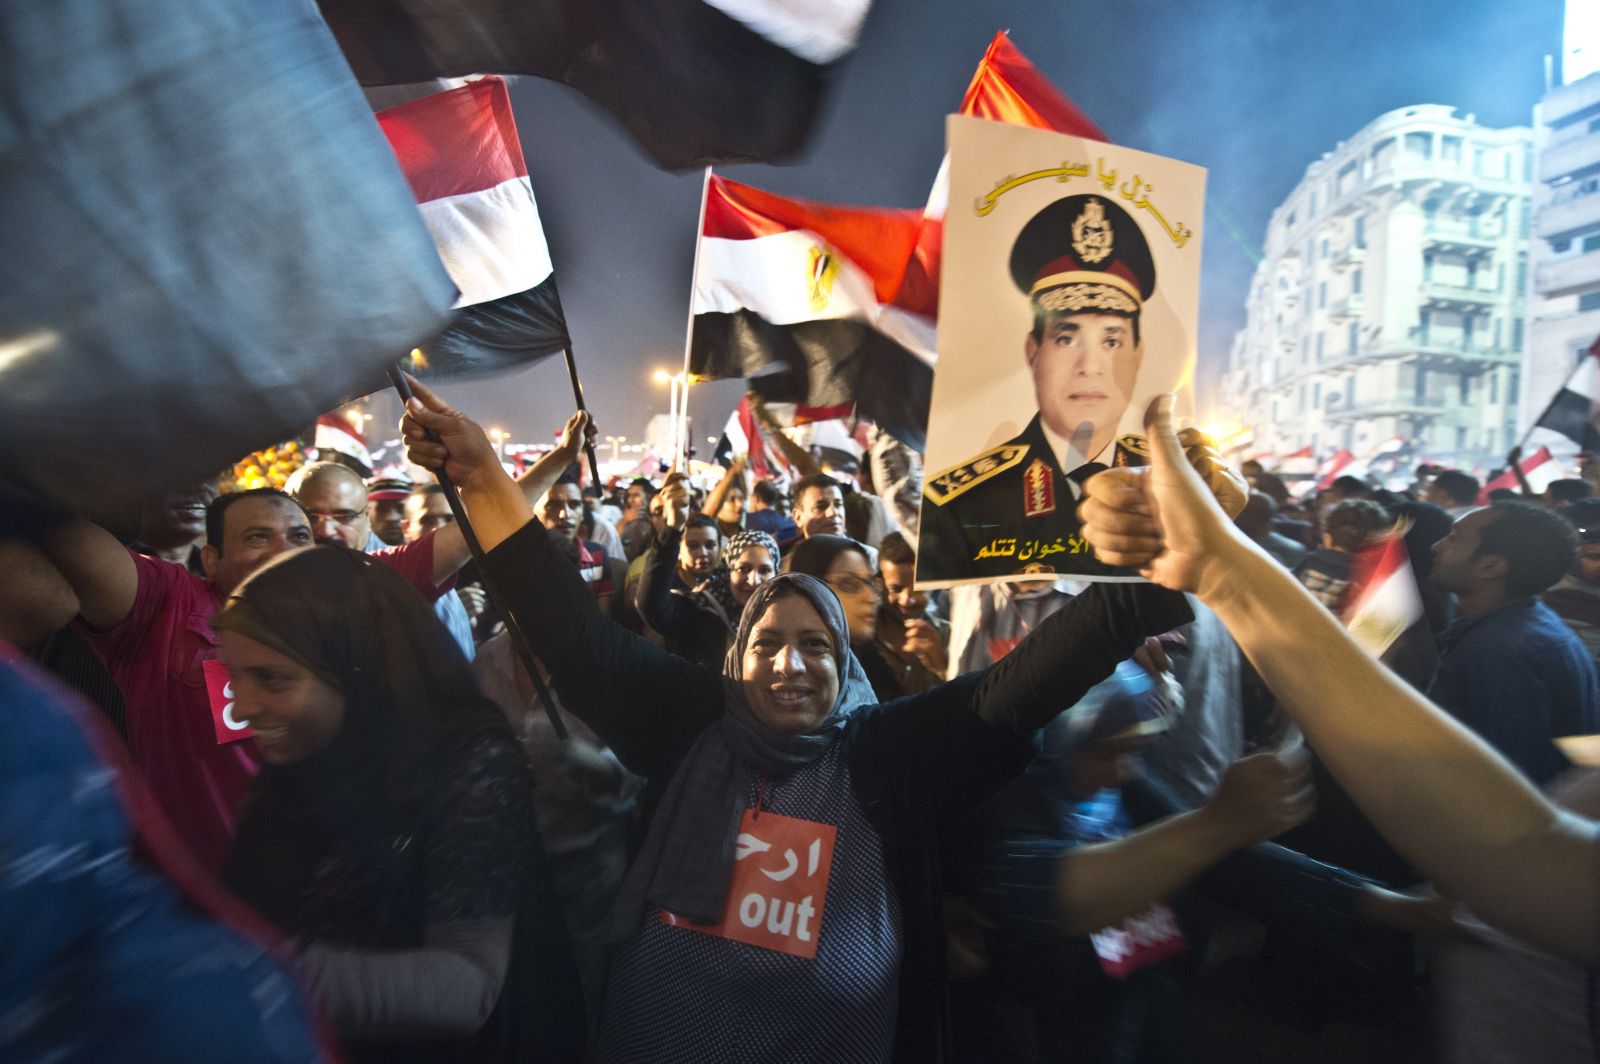 تظاهرة مؤيدة للرئيس المصري watan.com